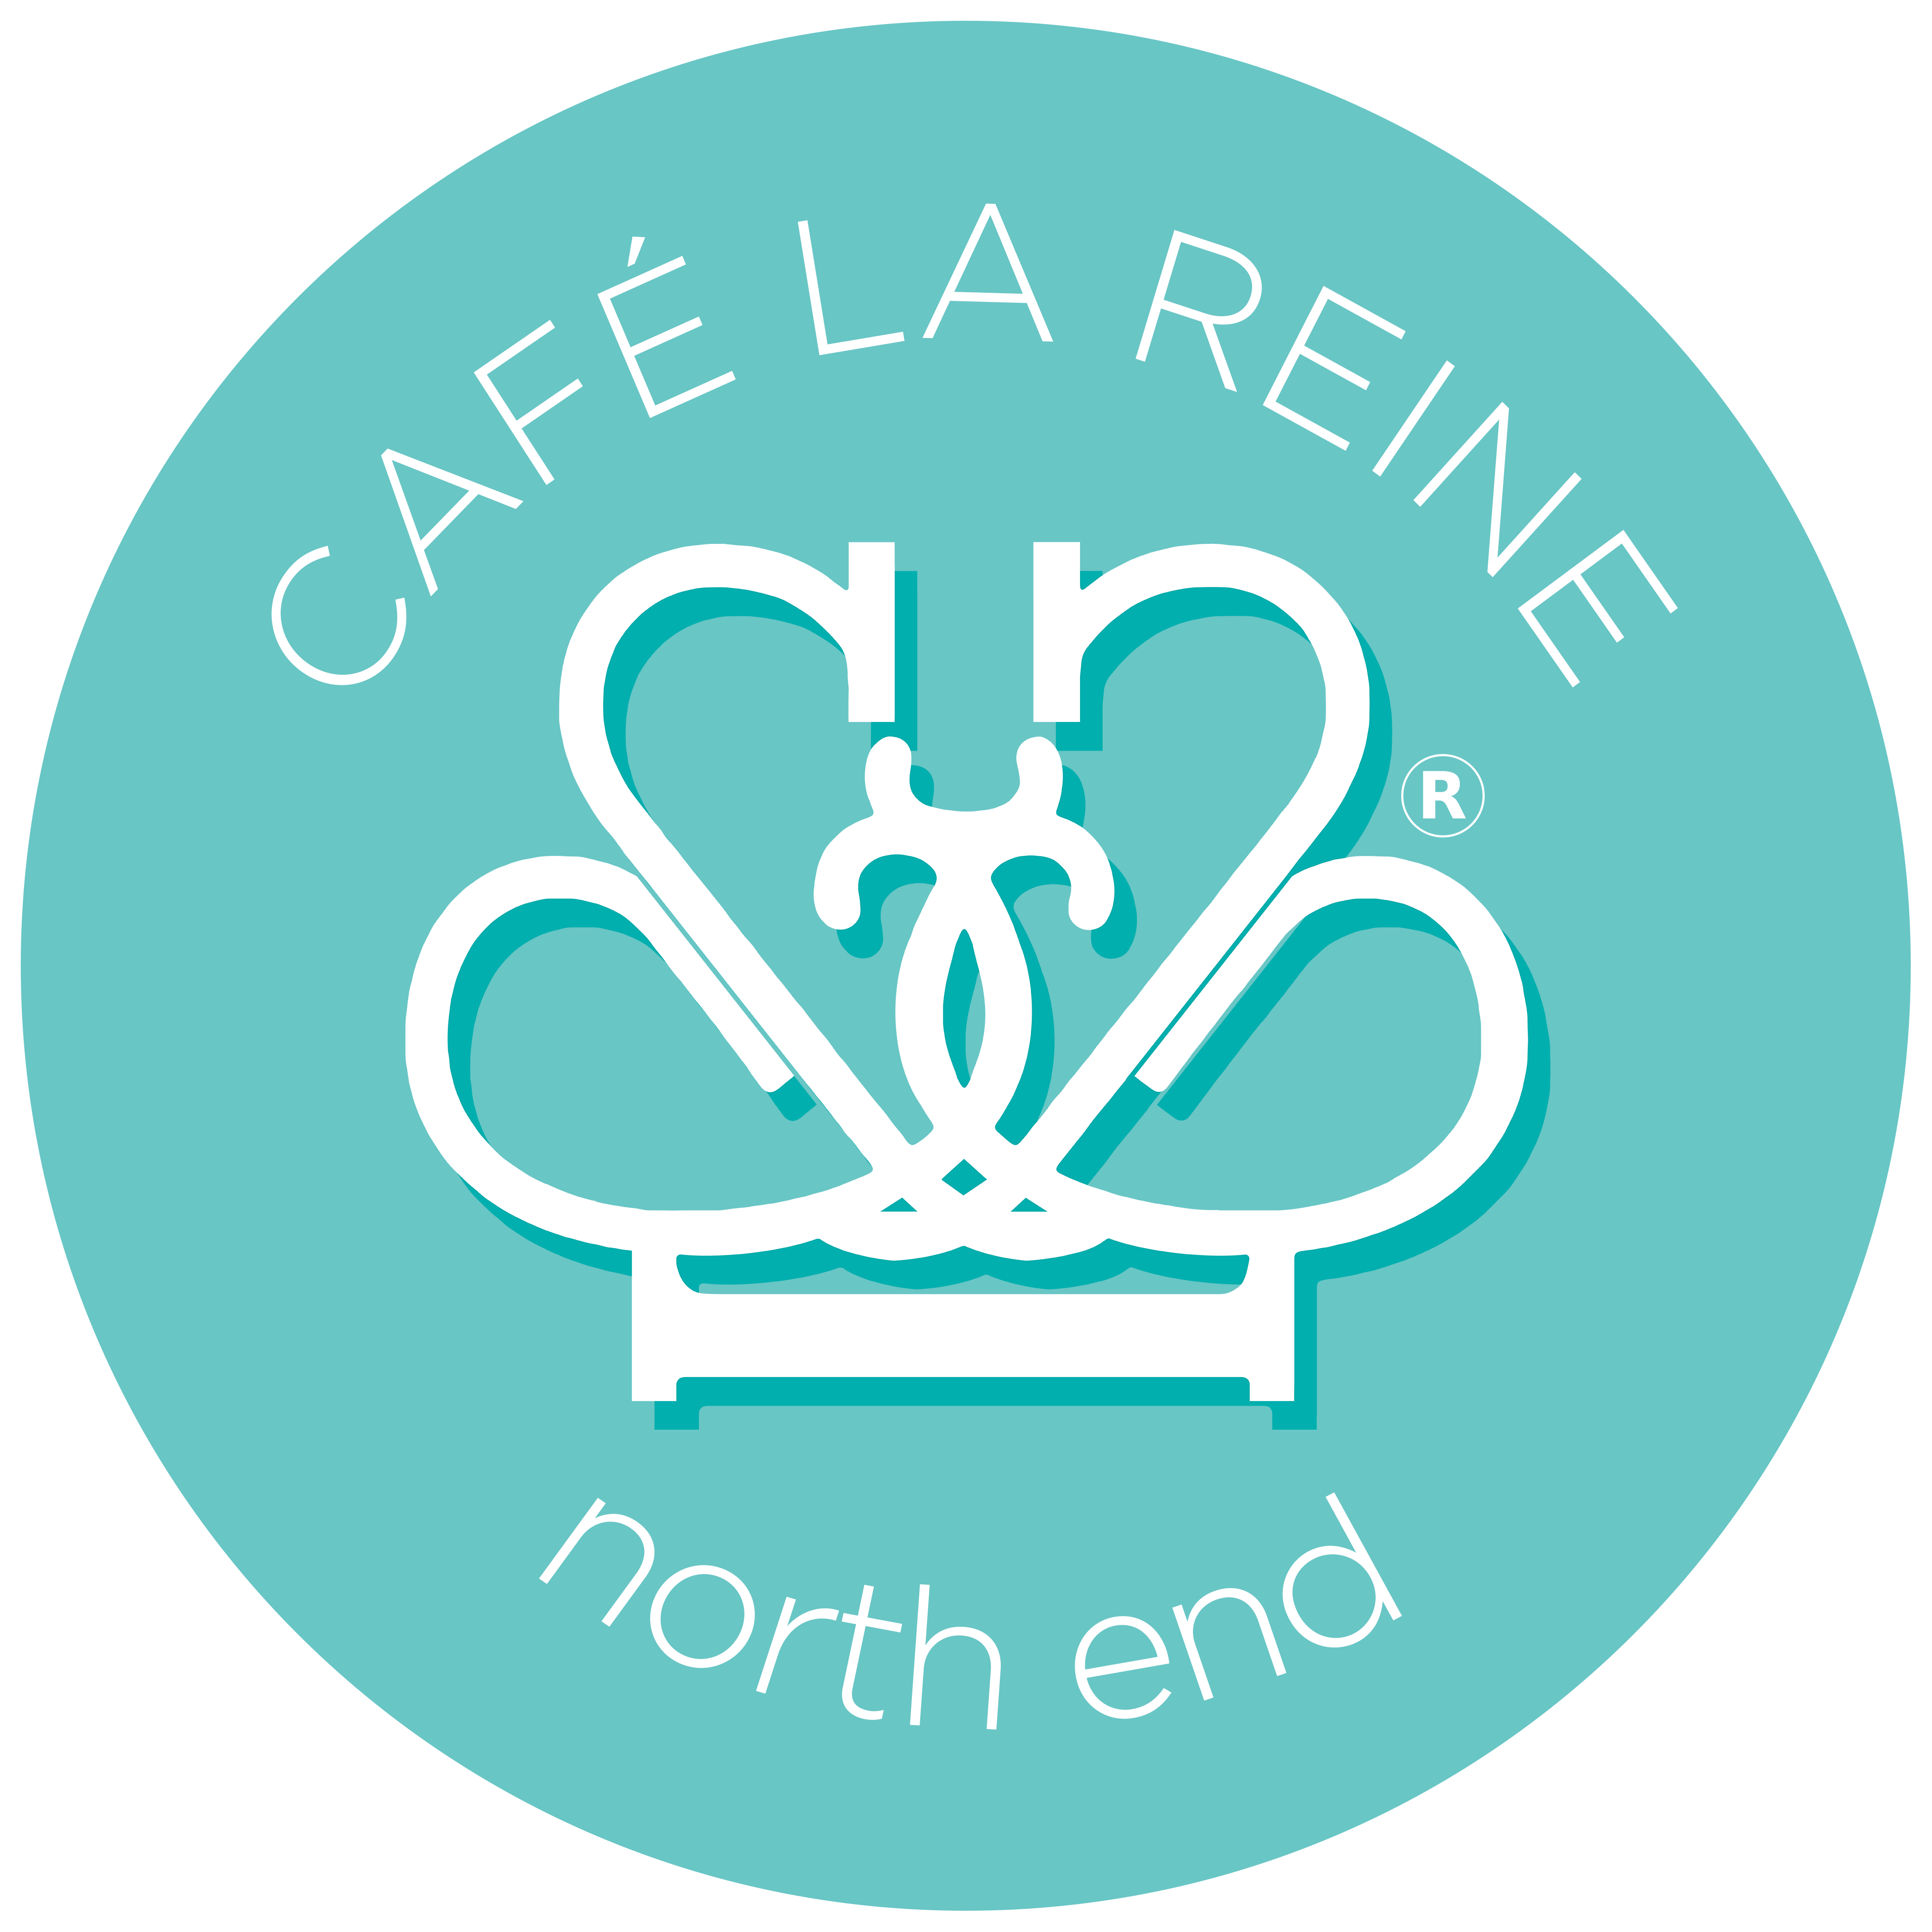 Café la Reine - North End